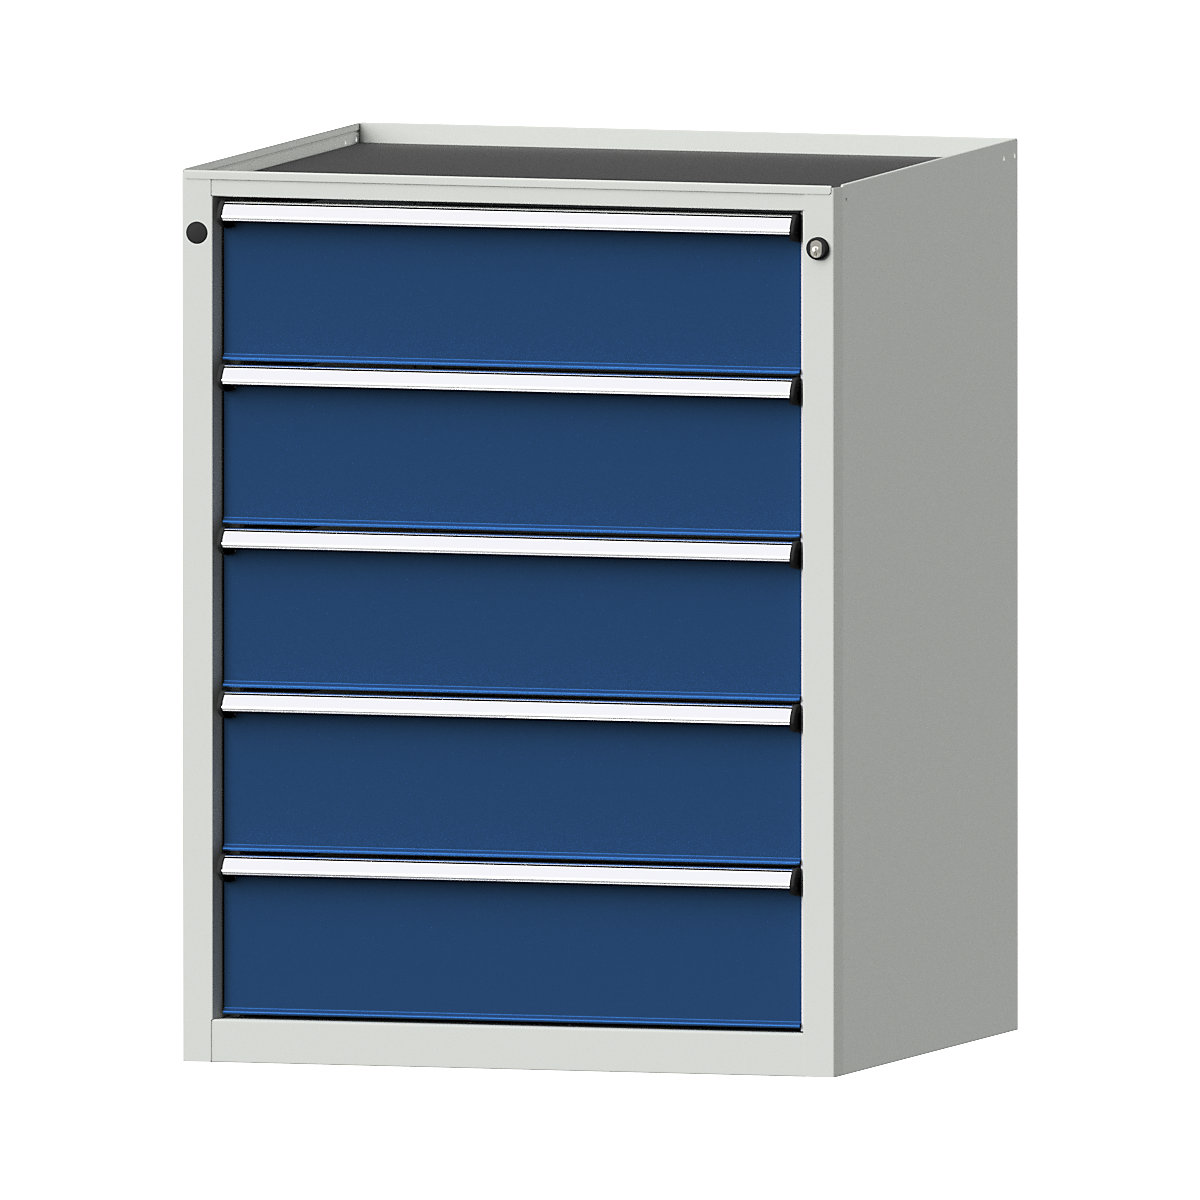 Zásuvková skříň – ANKE, š x h 760 x 675 mm, nosnost zásuvky 200 kg, 5 zásuvek, výška 980 mm, čelo hořcově modré